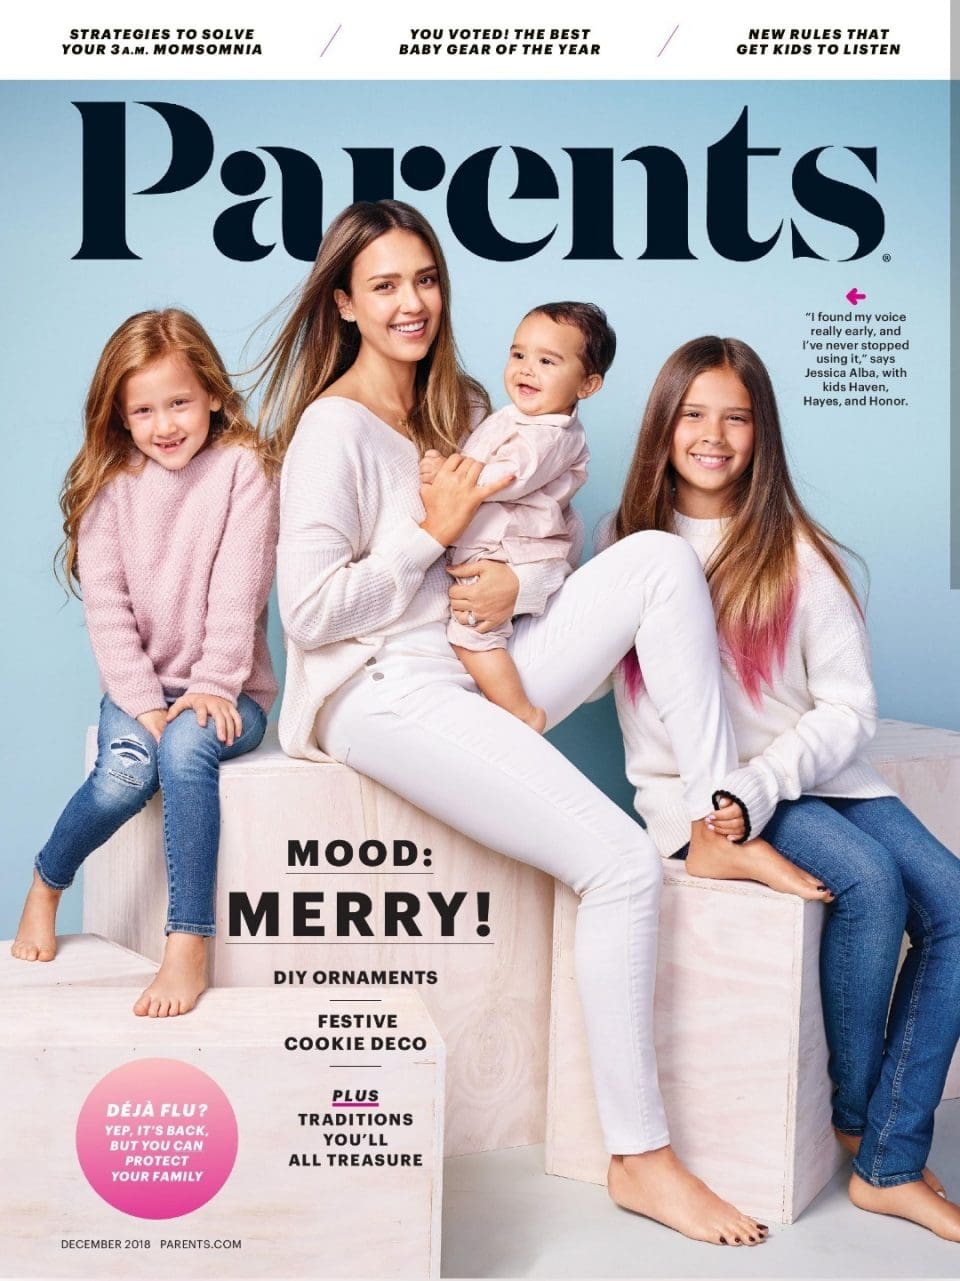 Parents Dec 2018 Mastheads & Editorial Calendars